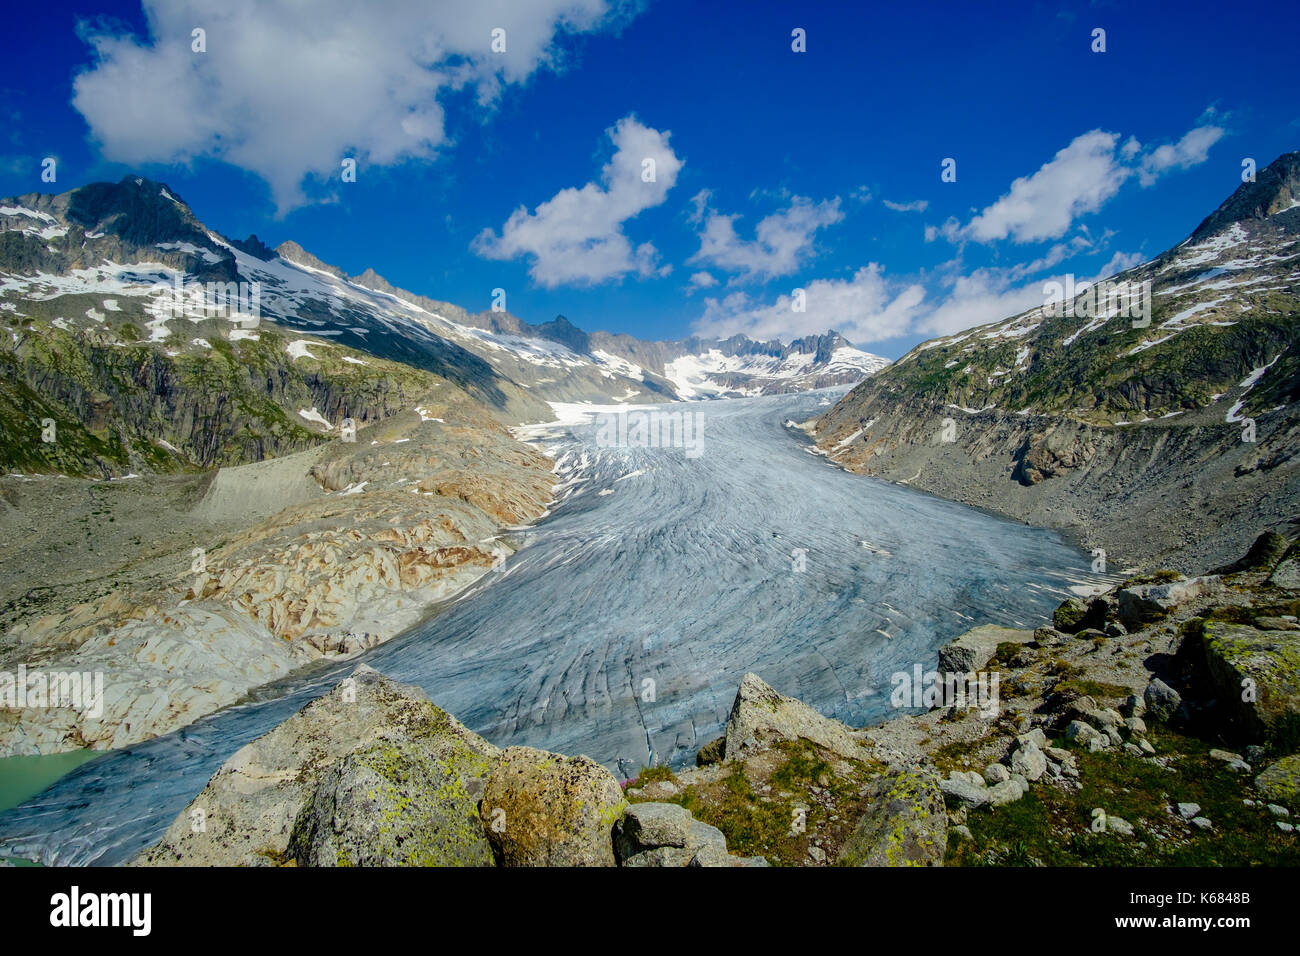 Luftaufnahme auf den Rhône Gletscher, dem größten Gletscher der Urner Alpen Stockfoto